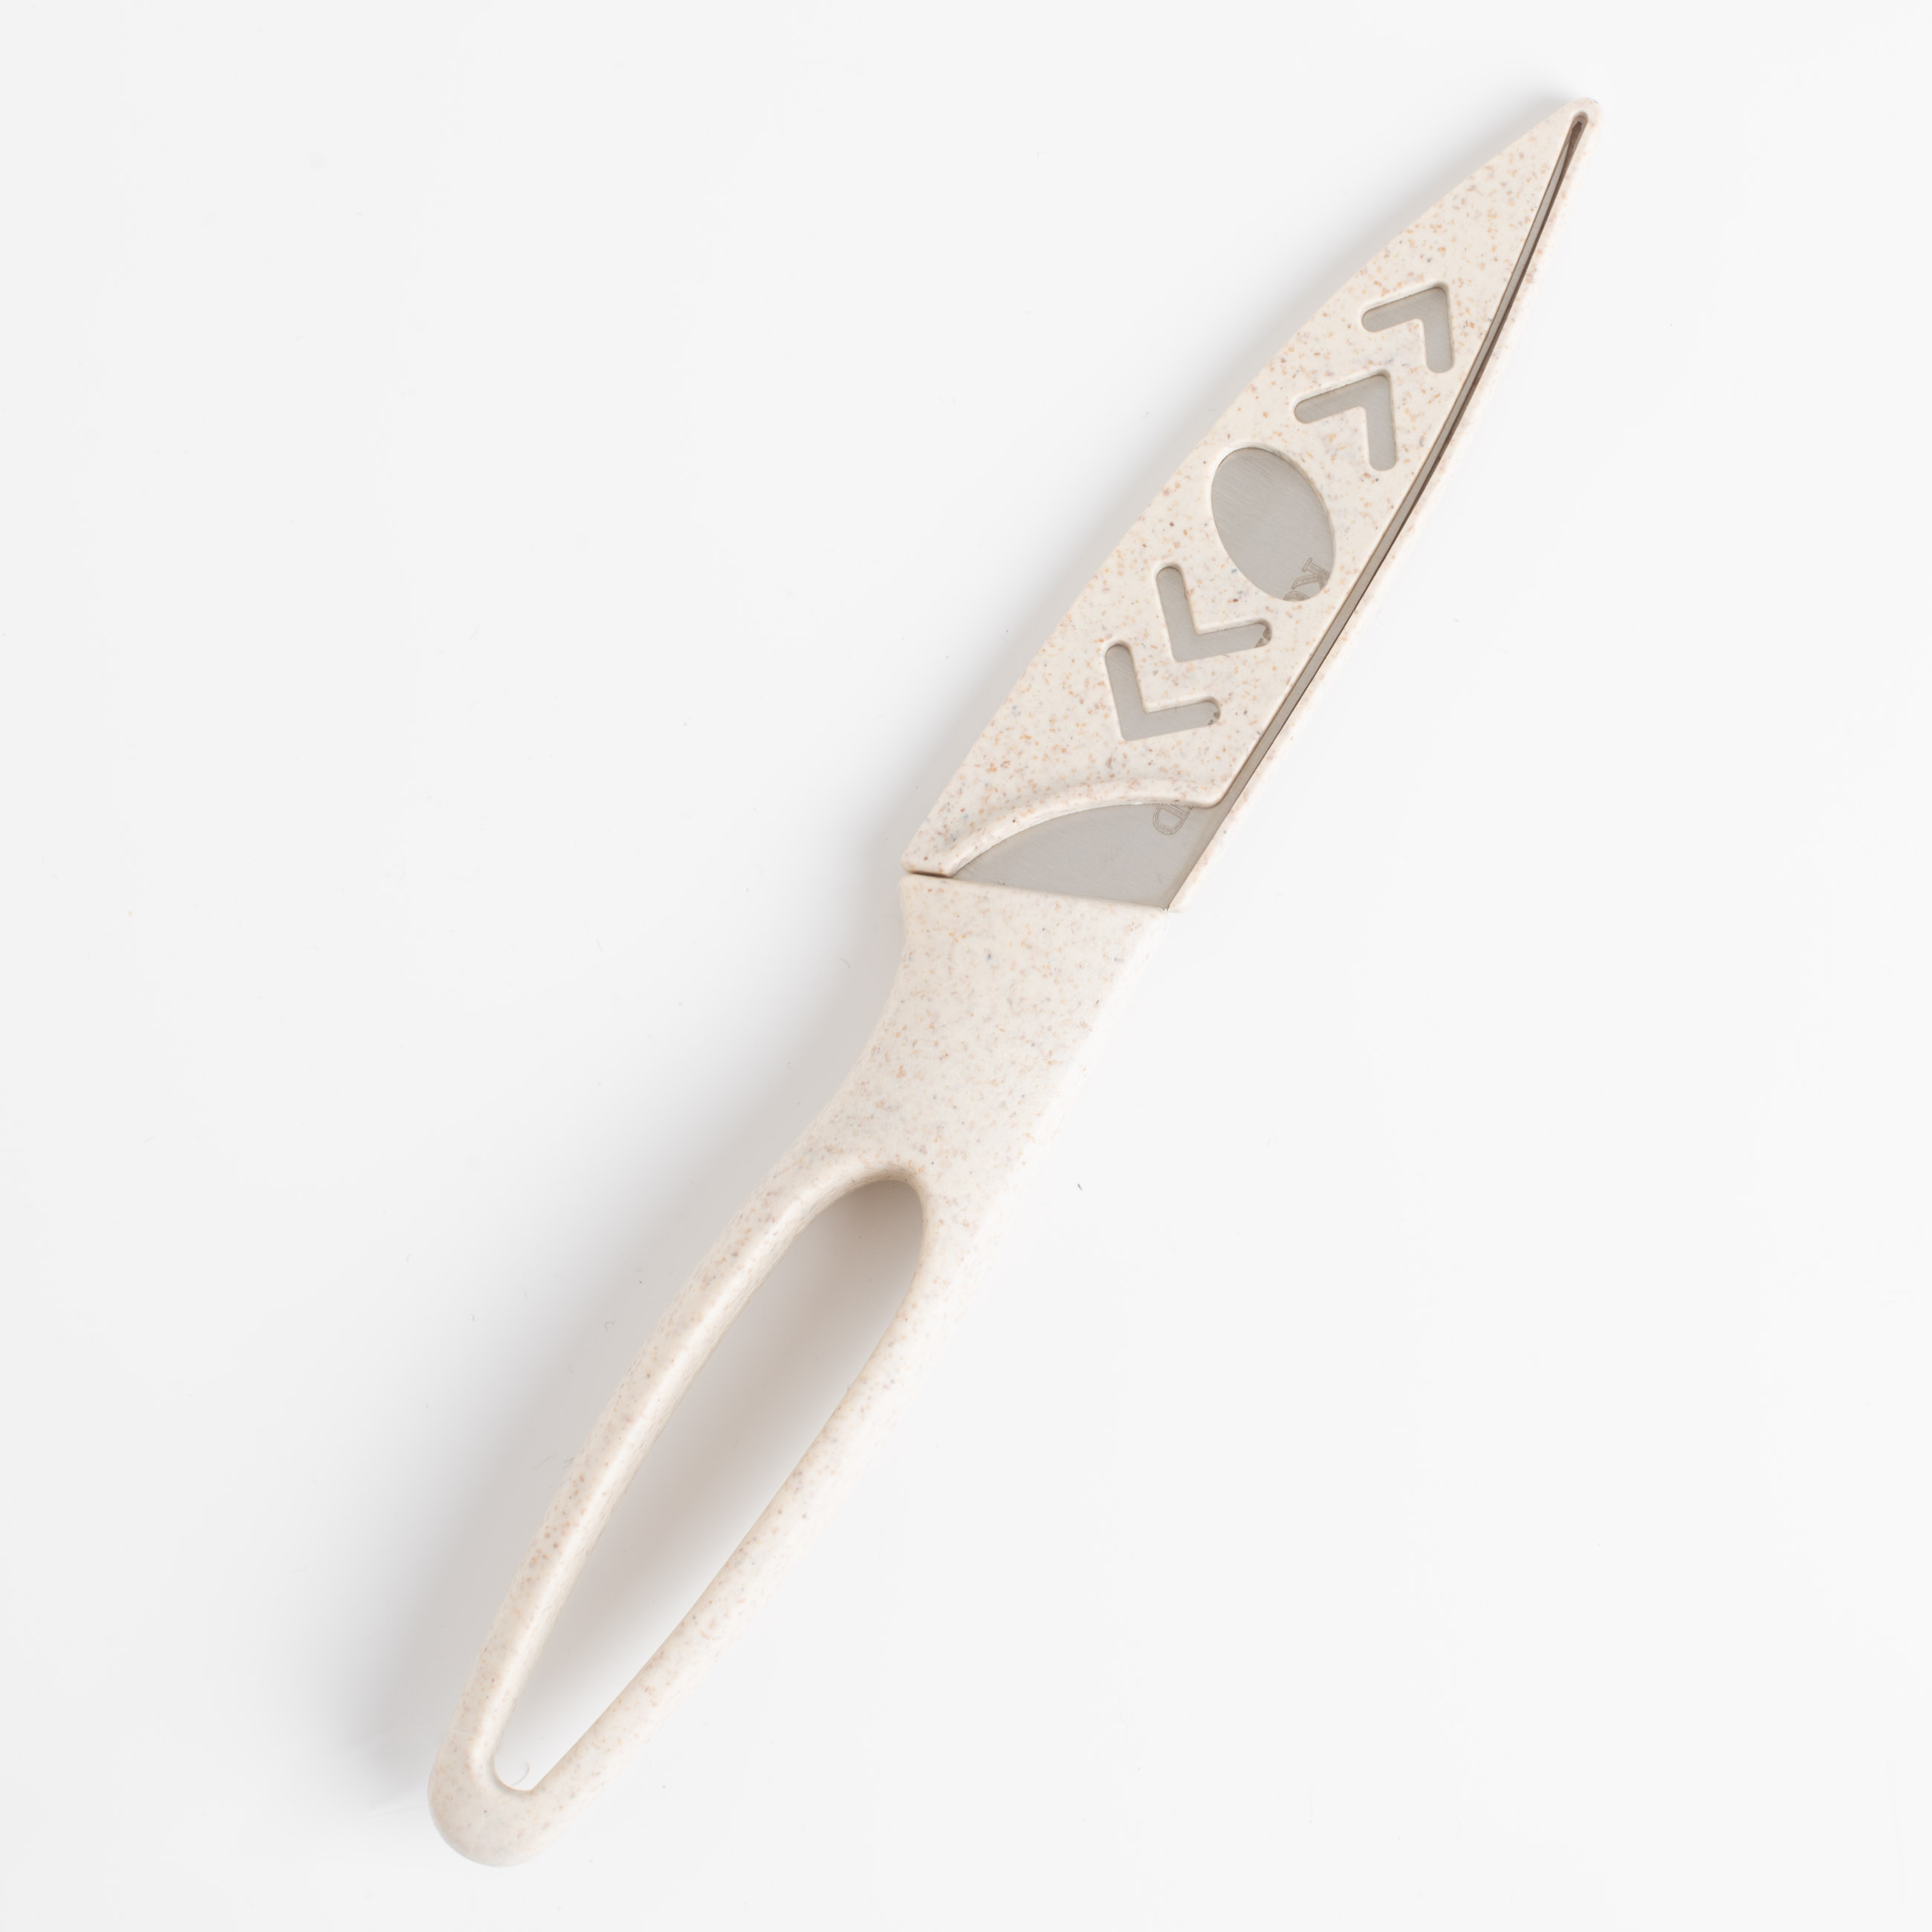 Нож для чистки овощей, 9 см, с чехлом, сталь/пластик, бежевый, в крапинку, Soft speckled изображение № 5